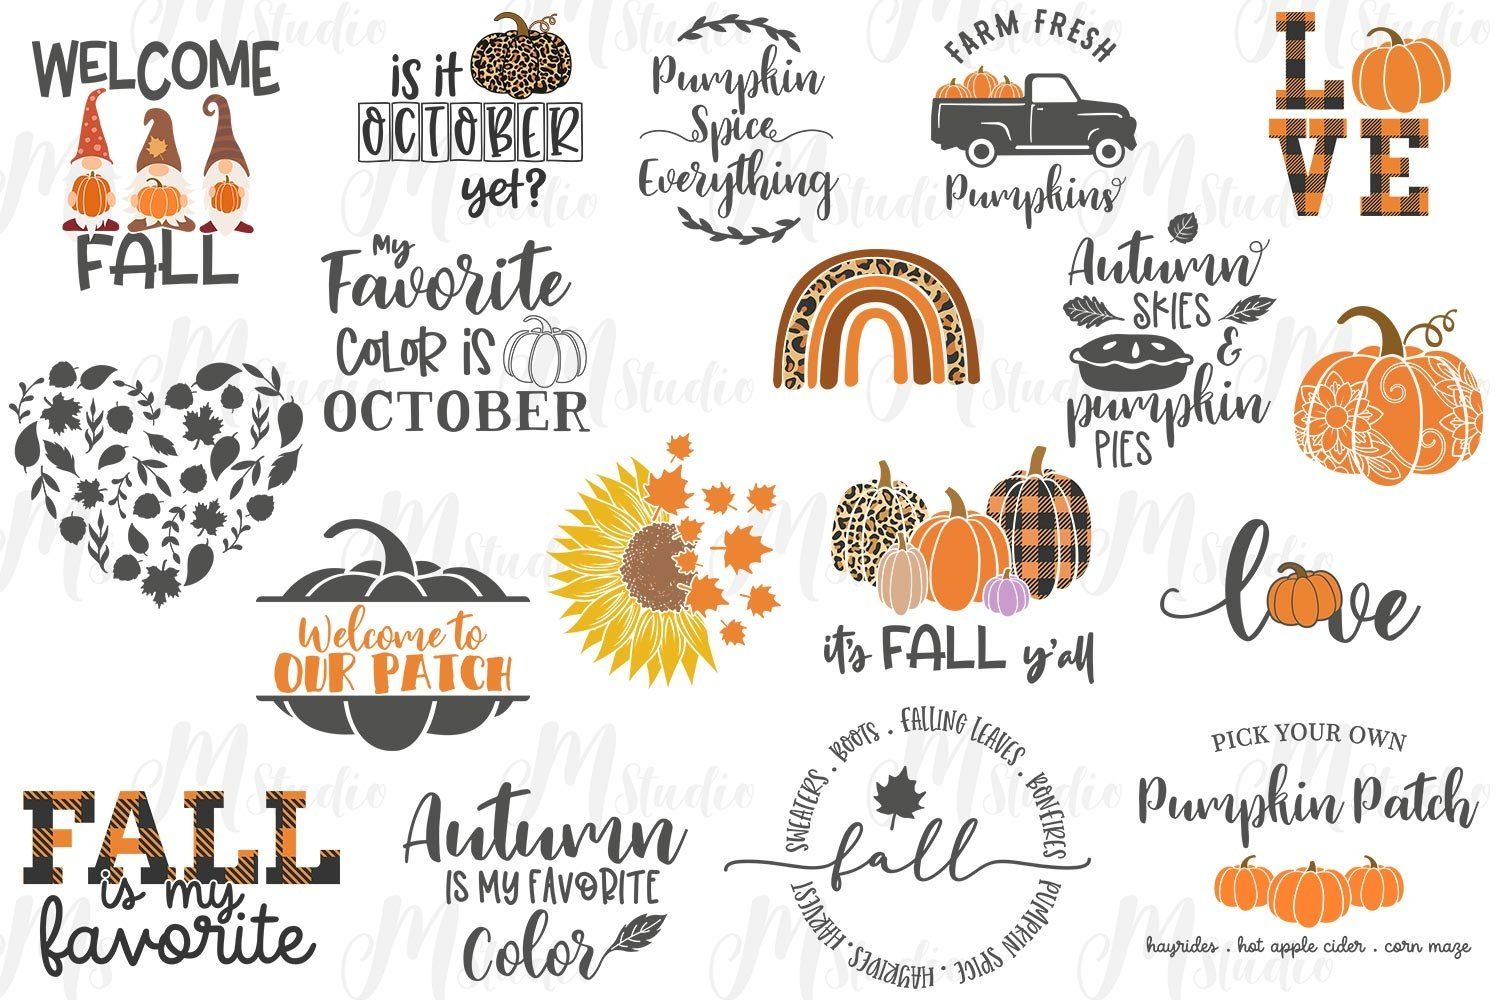 Autumn designs.